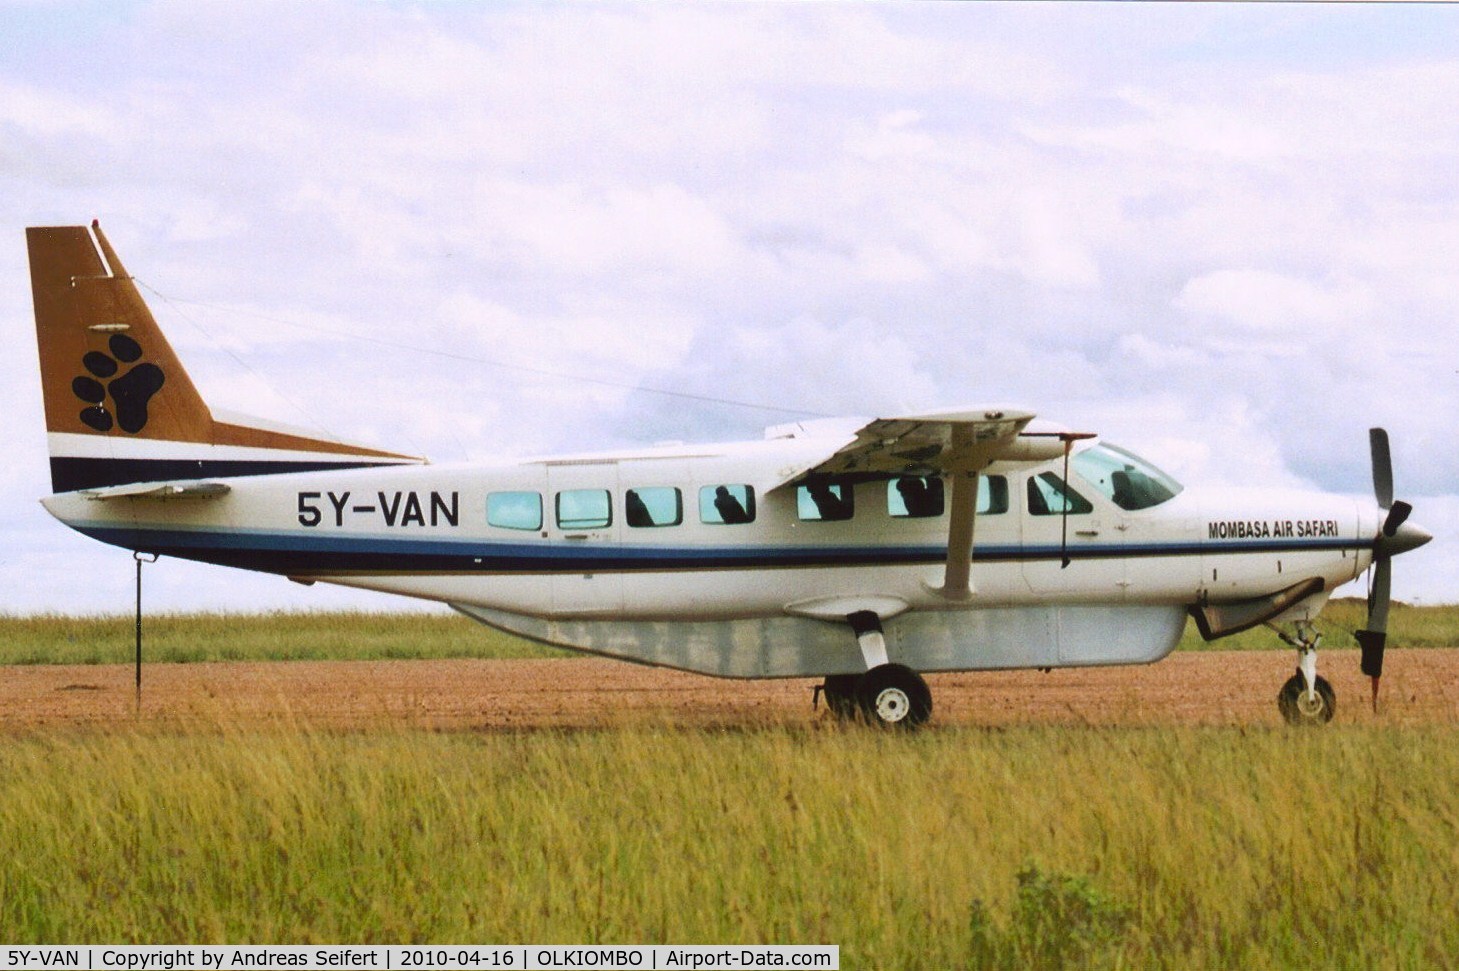 5Y-VAN, 1993 Cessna 208B Grand Caravan C/N 208B-0346, Olkiombo Airfield(Kenya)16.4.2010